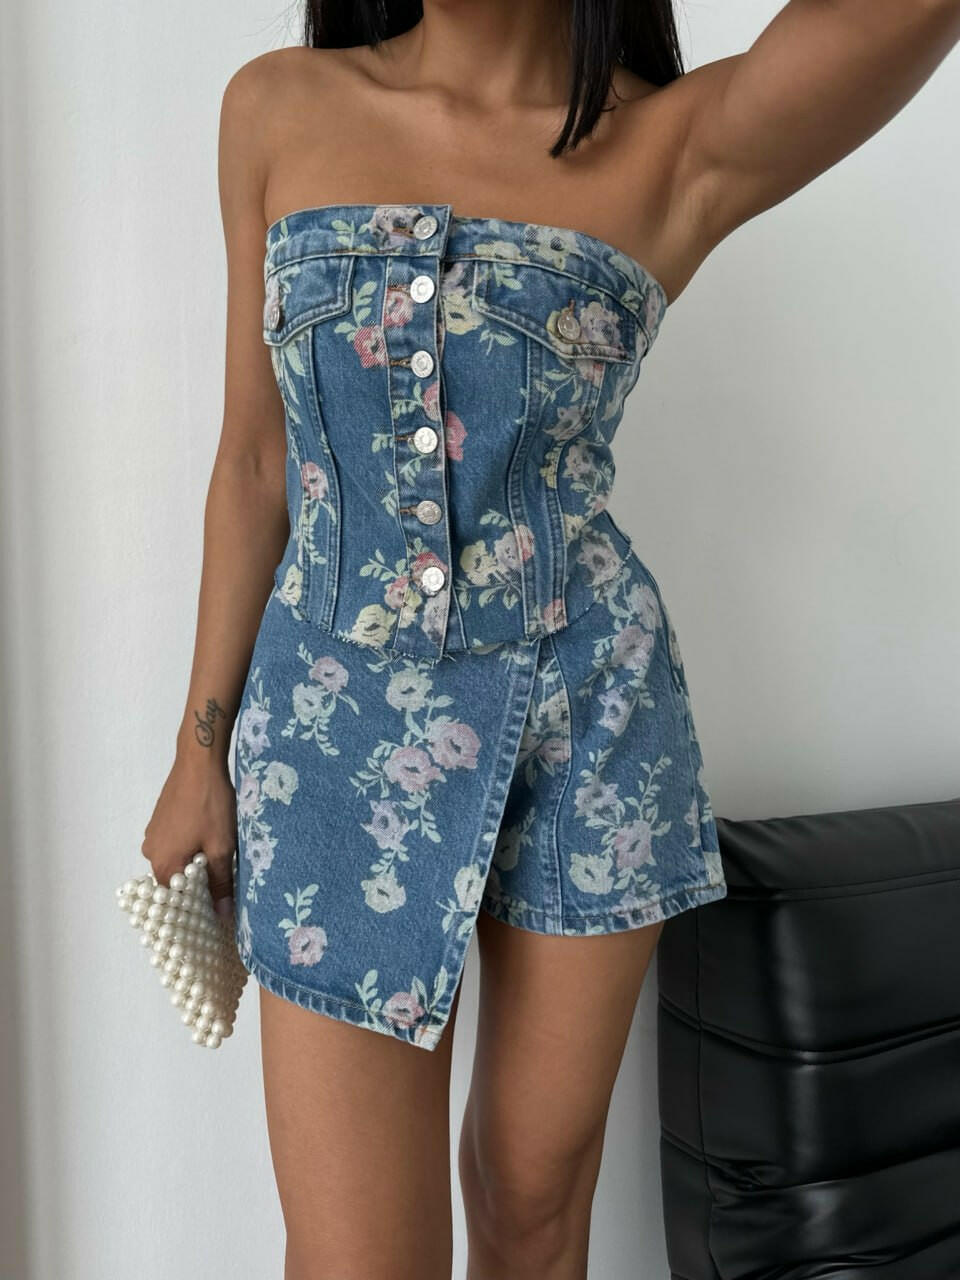 Flower Print Design Denim Short Skirt SQ1134-1 Dark Blue